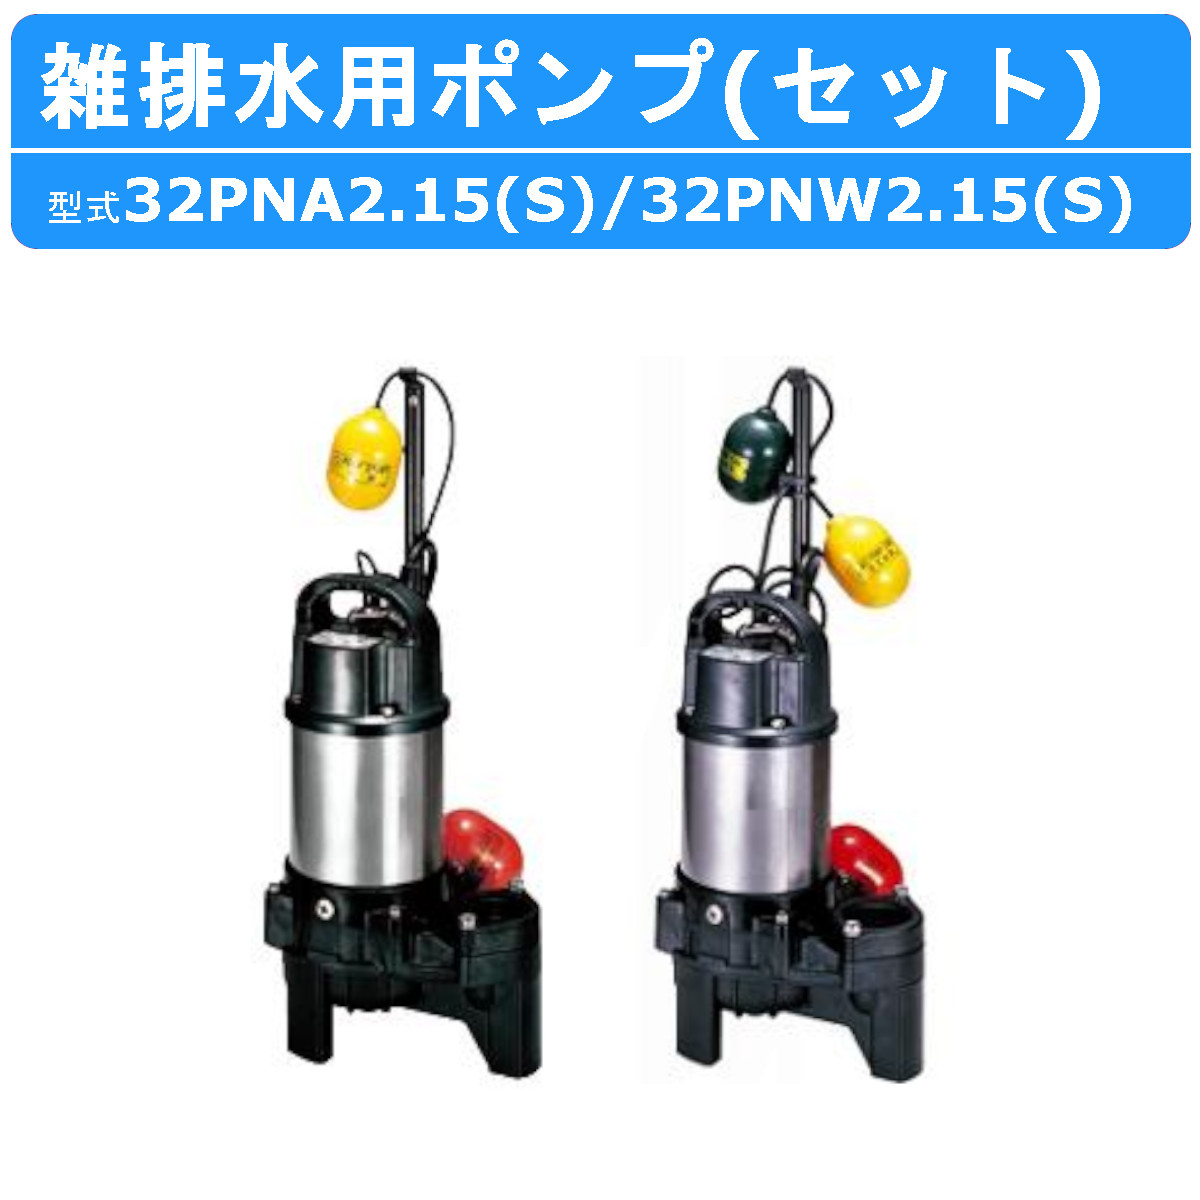 ツルミ 雑排水用 水中ポンプ セット 32PNA2.15S / 32PNW2.15S 100V